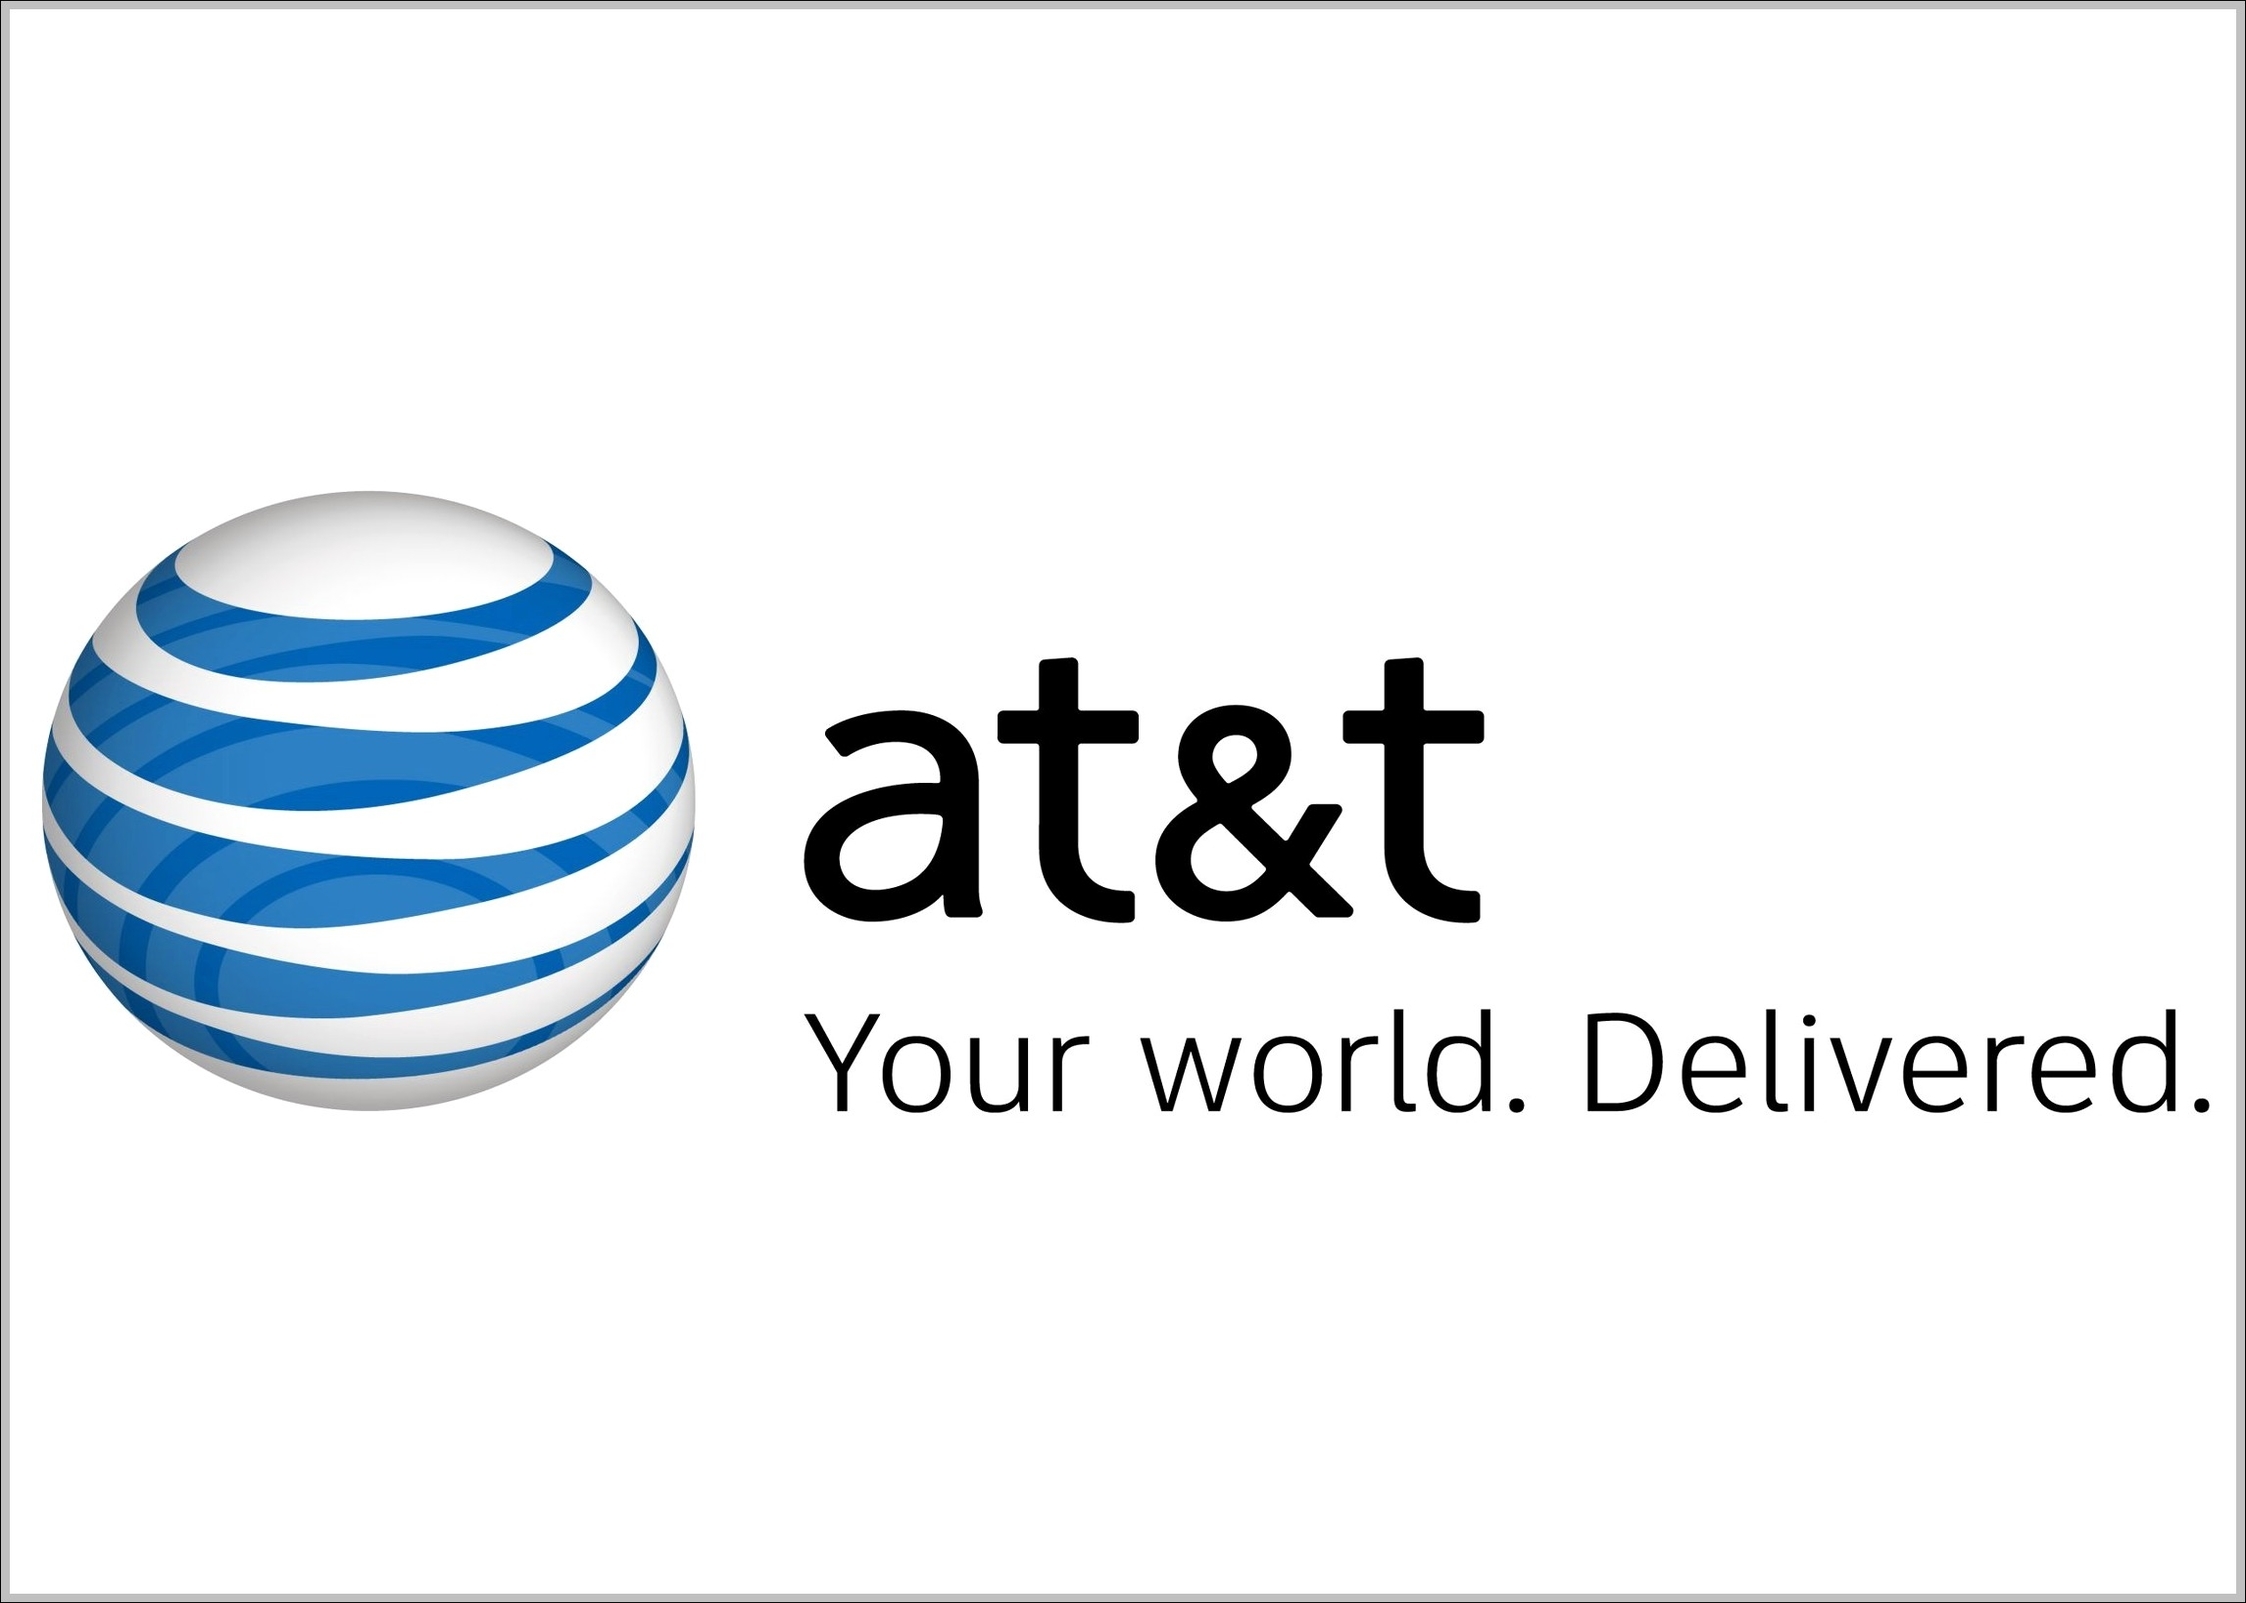 ATT logo and slogan